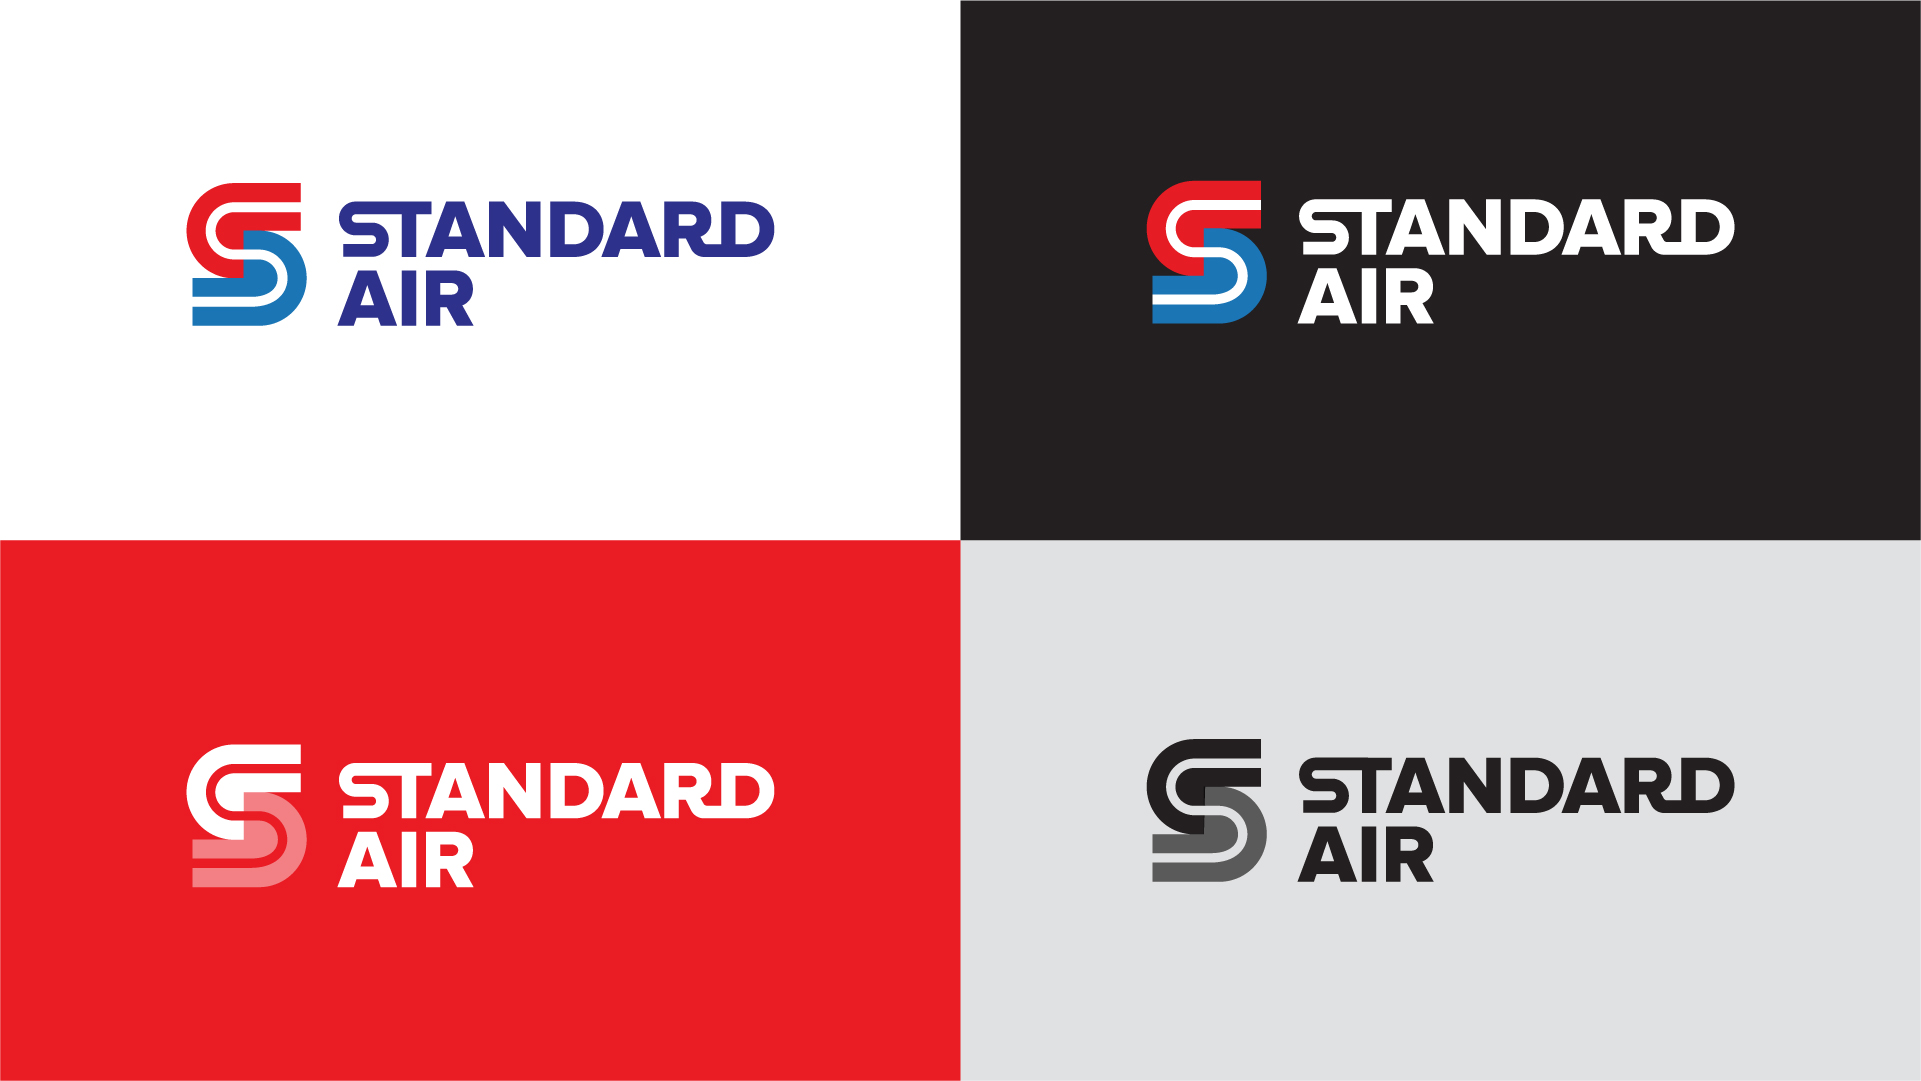 Standard Air logo variations